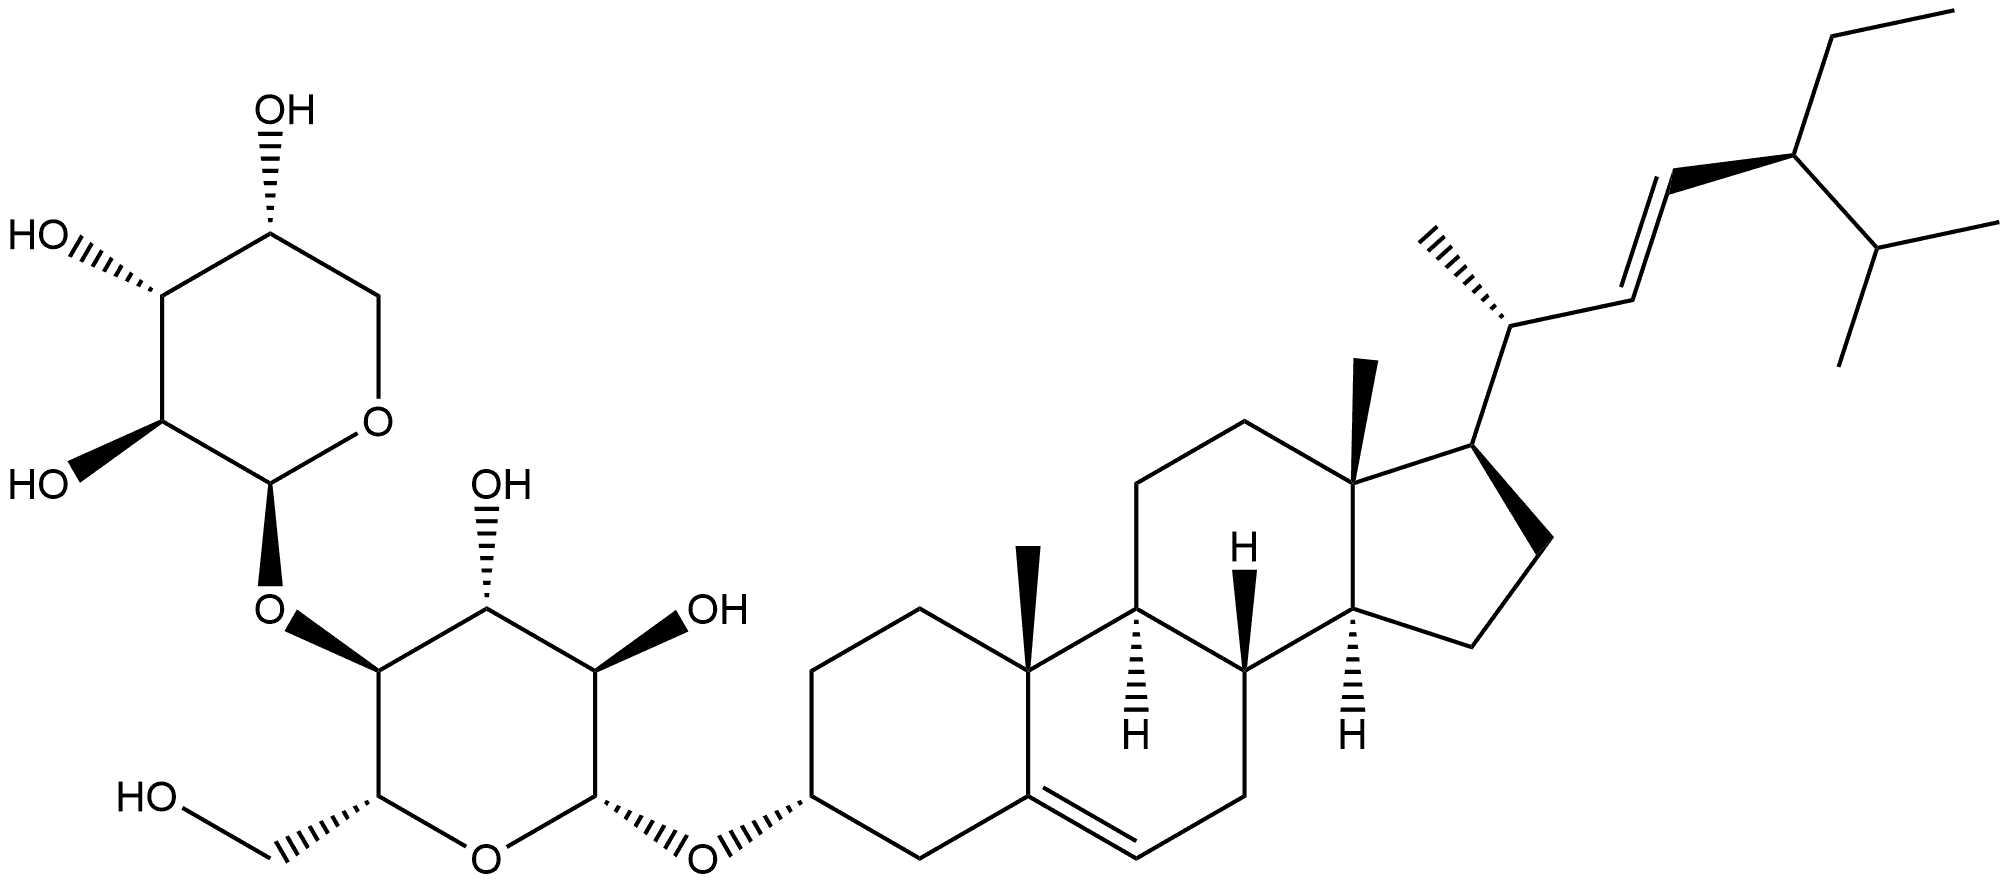 β-D-Glucopyranoside, (3β,22E)-stigmasta-5,22-dien-3-yl 4-O-β-D-arabinopyranosyl-